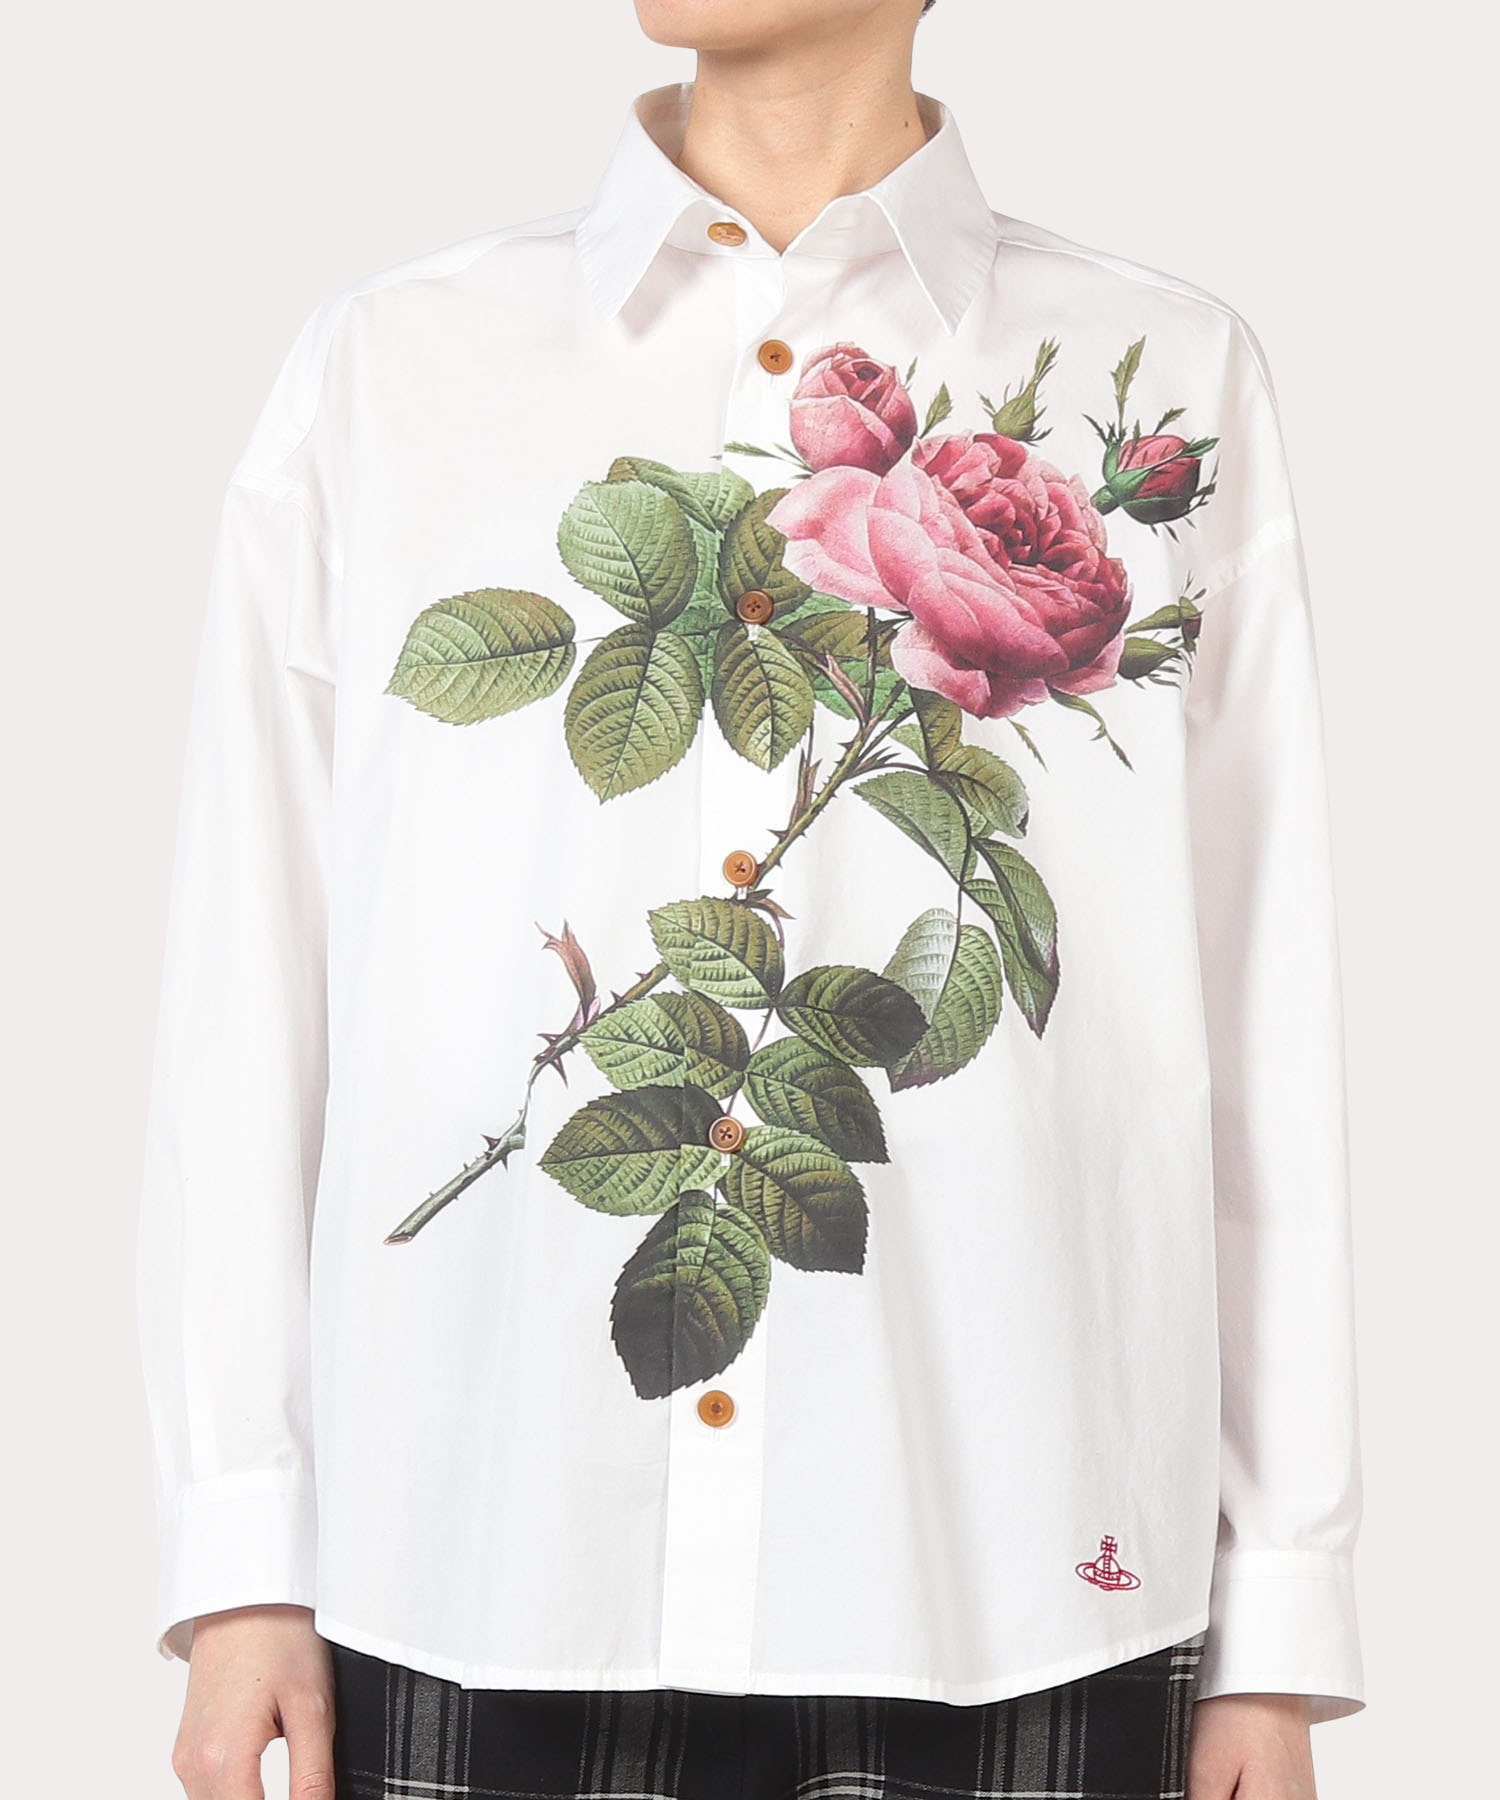 12,480円【Vivienne Westwood MAN】REDOUTE ROSE シャツ